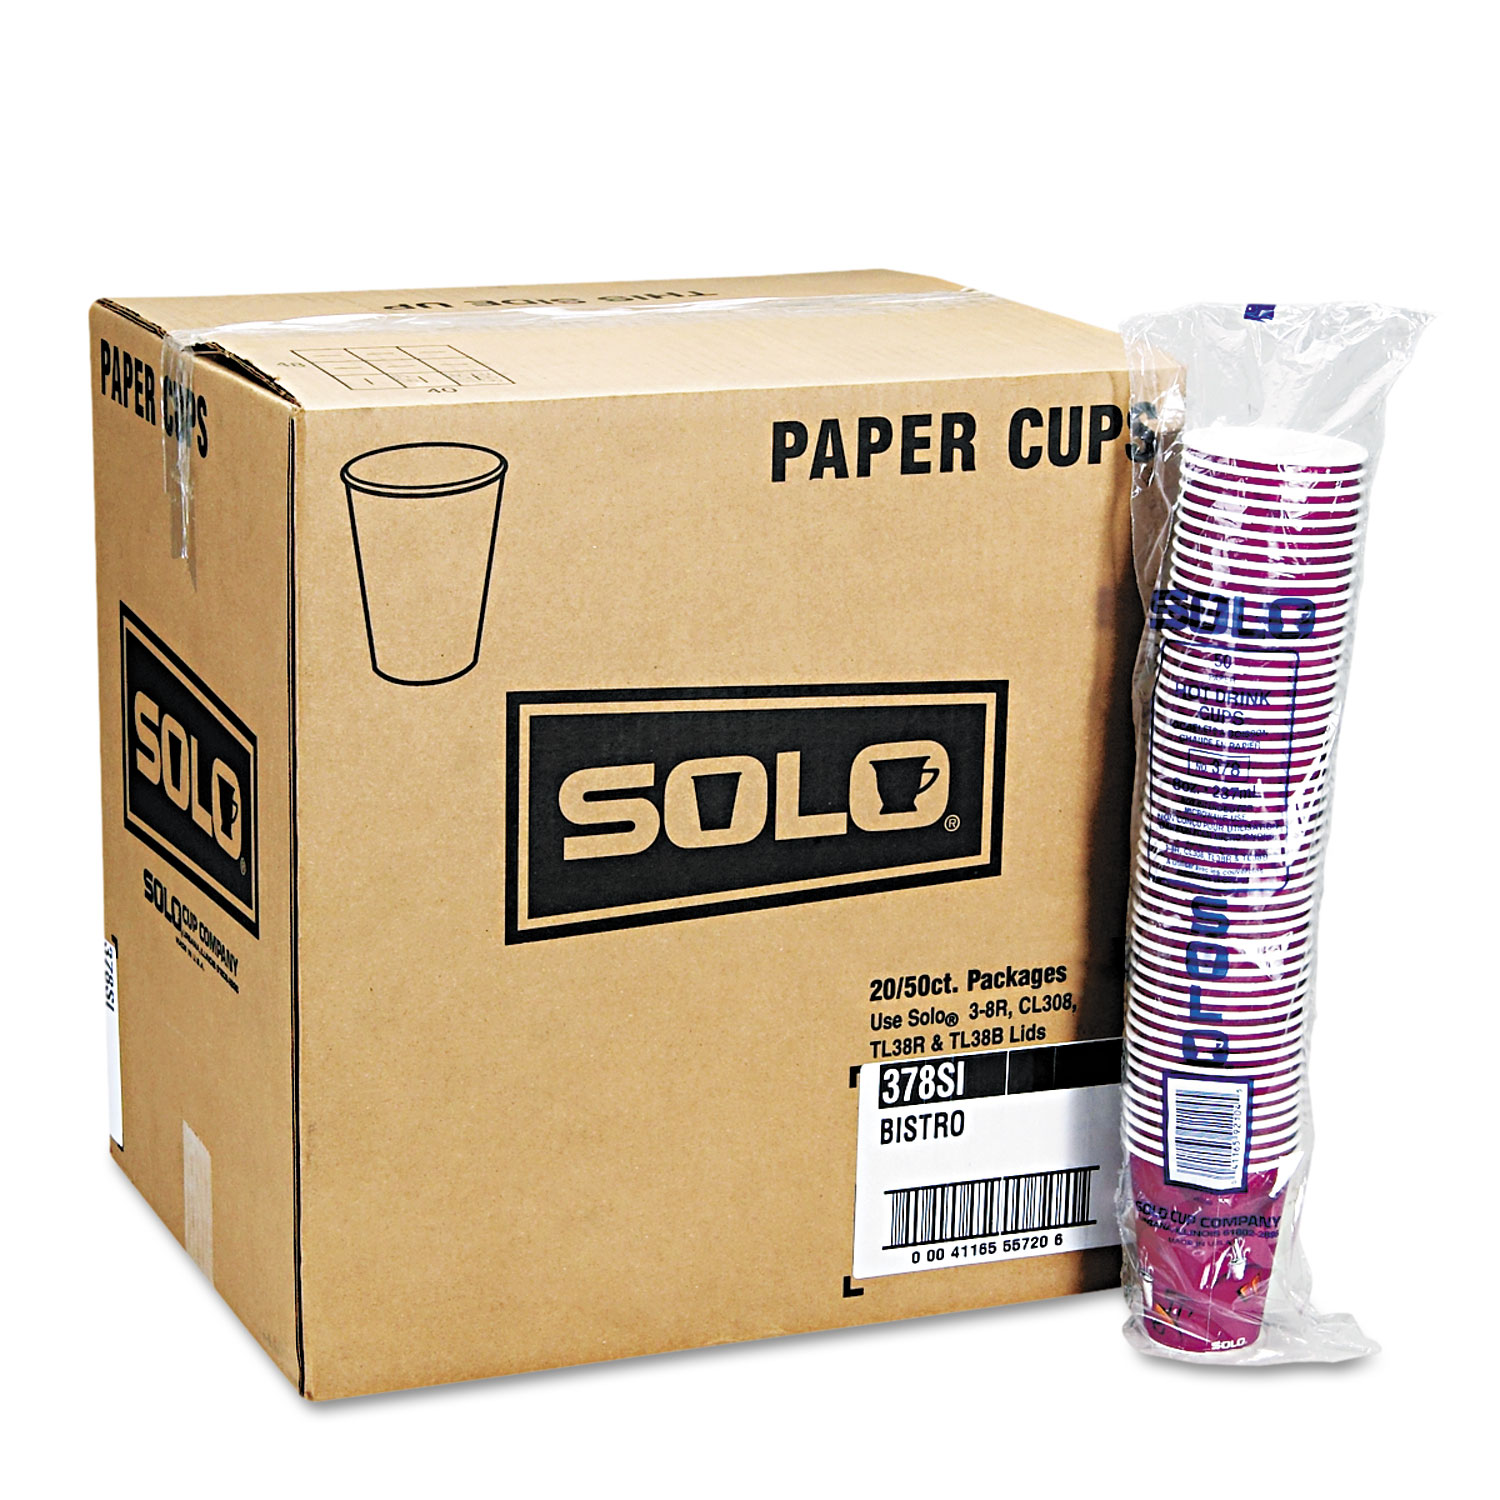  Dart 412SIN-0041 Solo Bistro Design Hot Drink Cups, Paper, 12oz, Maroon, 50/Bag, 20 Bags/Carton (SCC412SIN) 